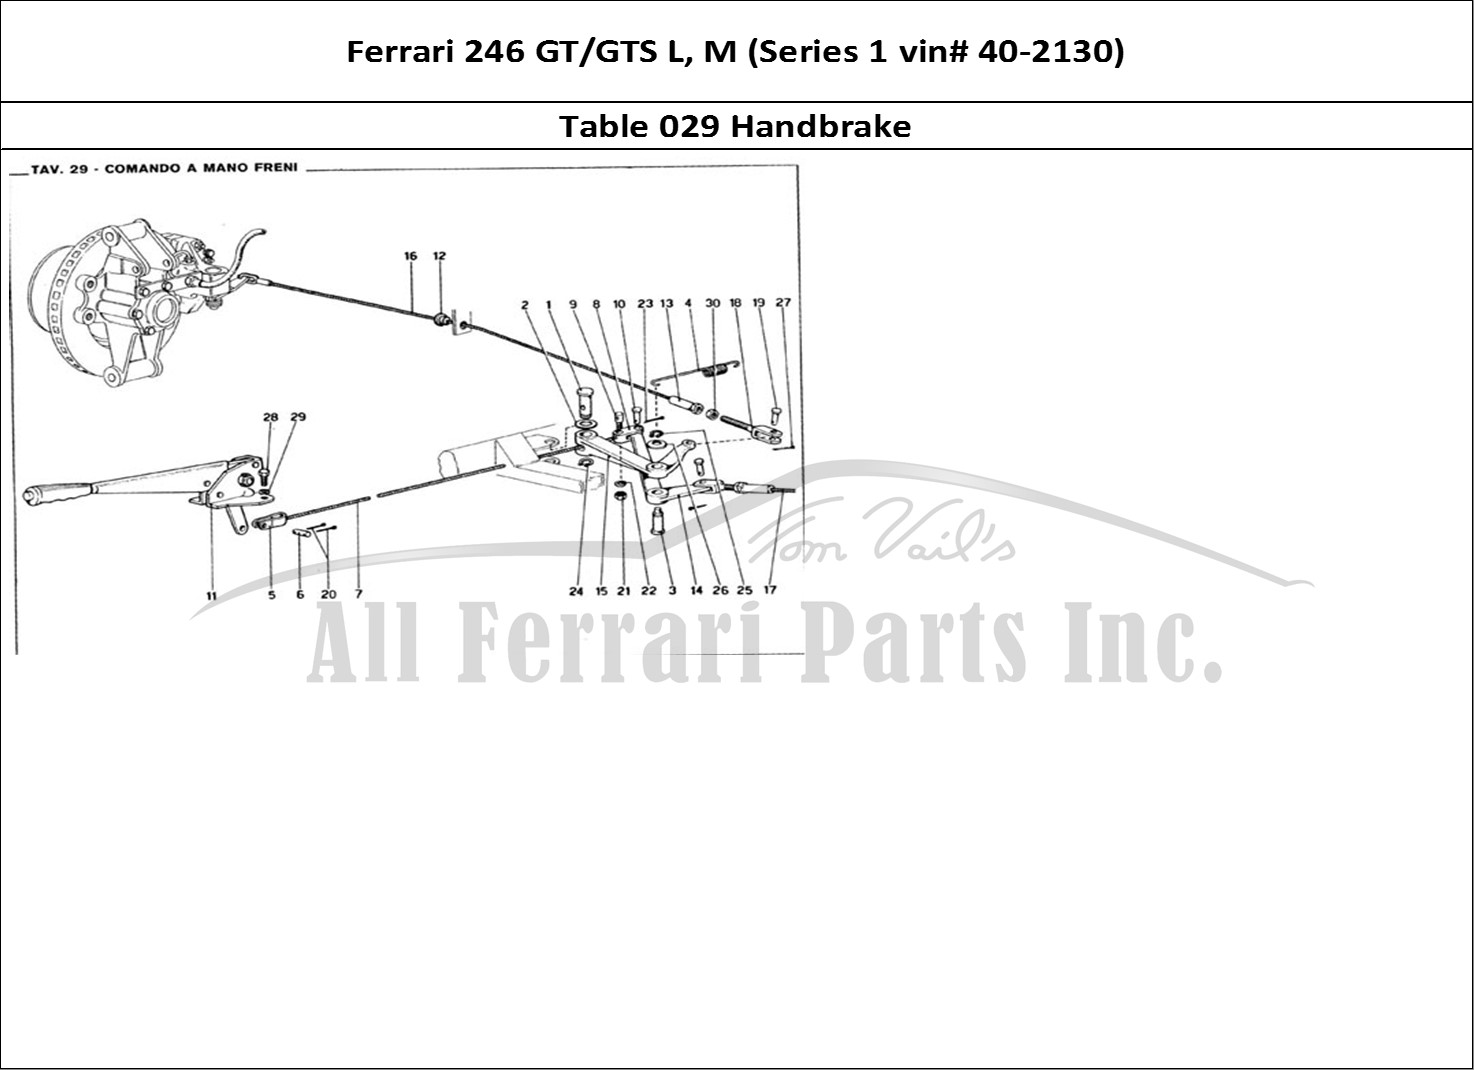 Ferrari Parts Ferrari 246 GT Series 1 Page 029 Handbrake Control